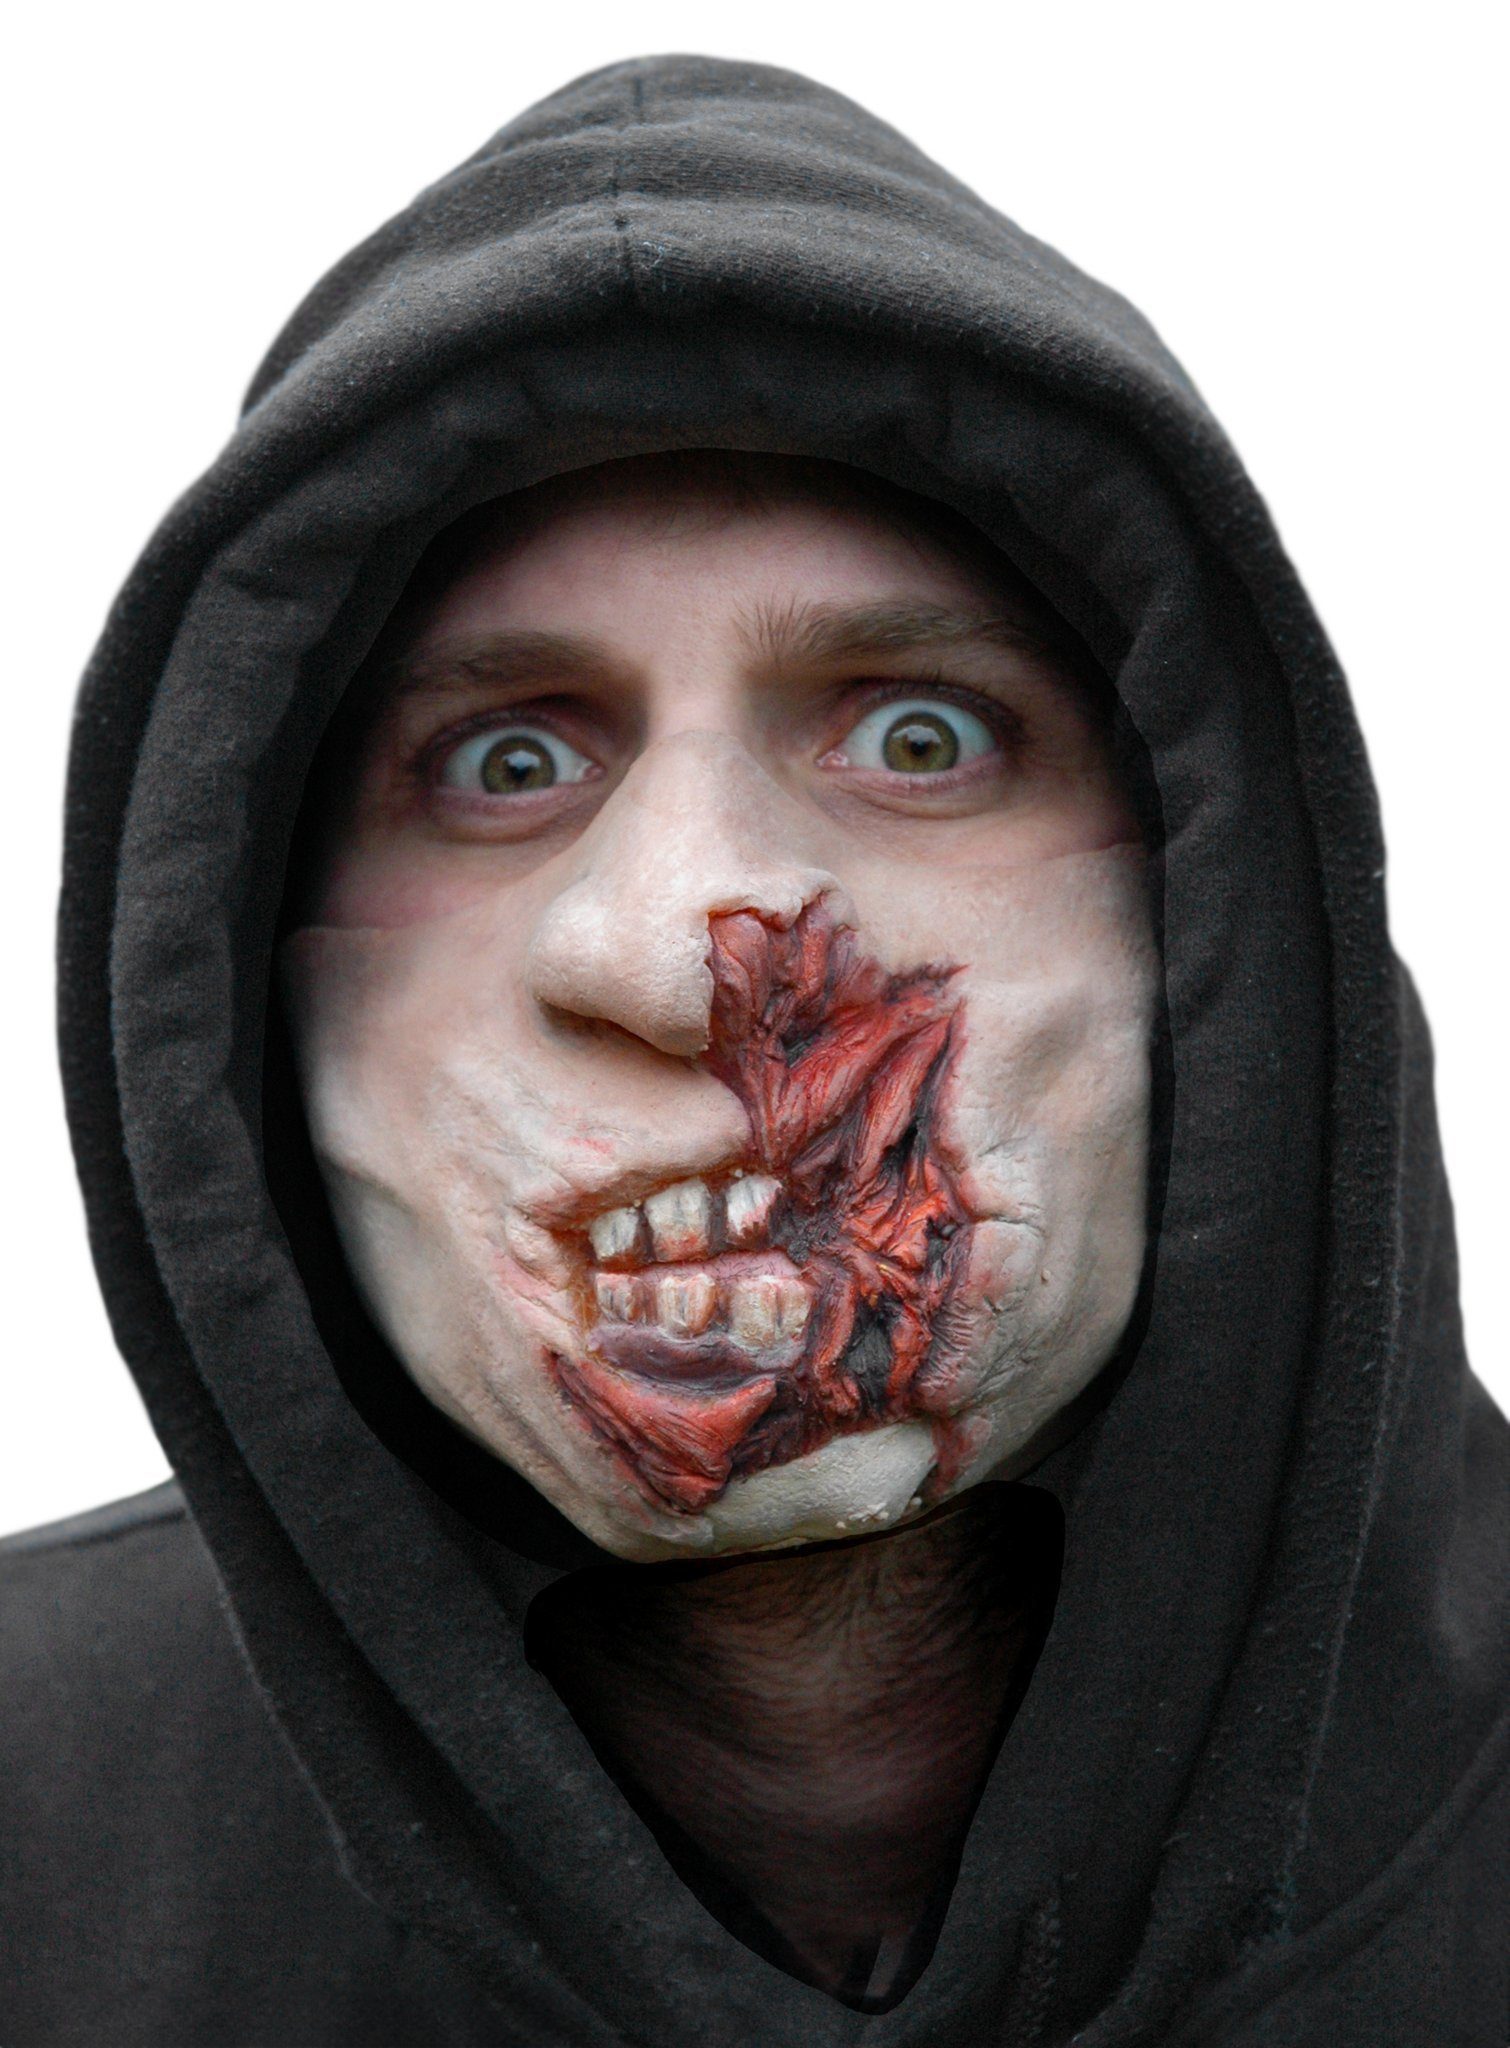 Wizardo Verkleidungsmaske Zombiemaske - Decayed Dan, Eine gruselige Zombiemaske für Karneval und Verkleidungspartys